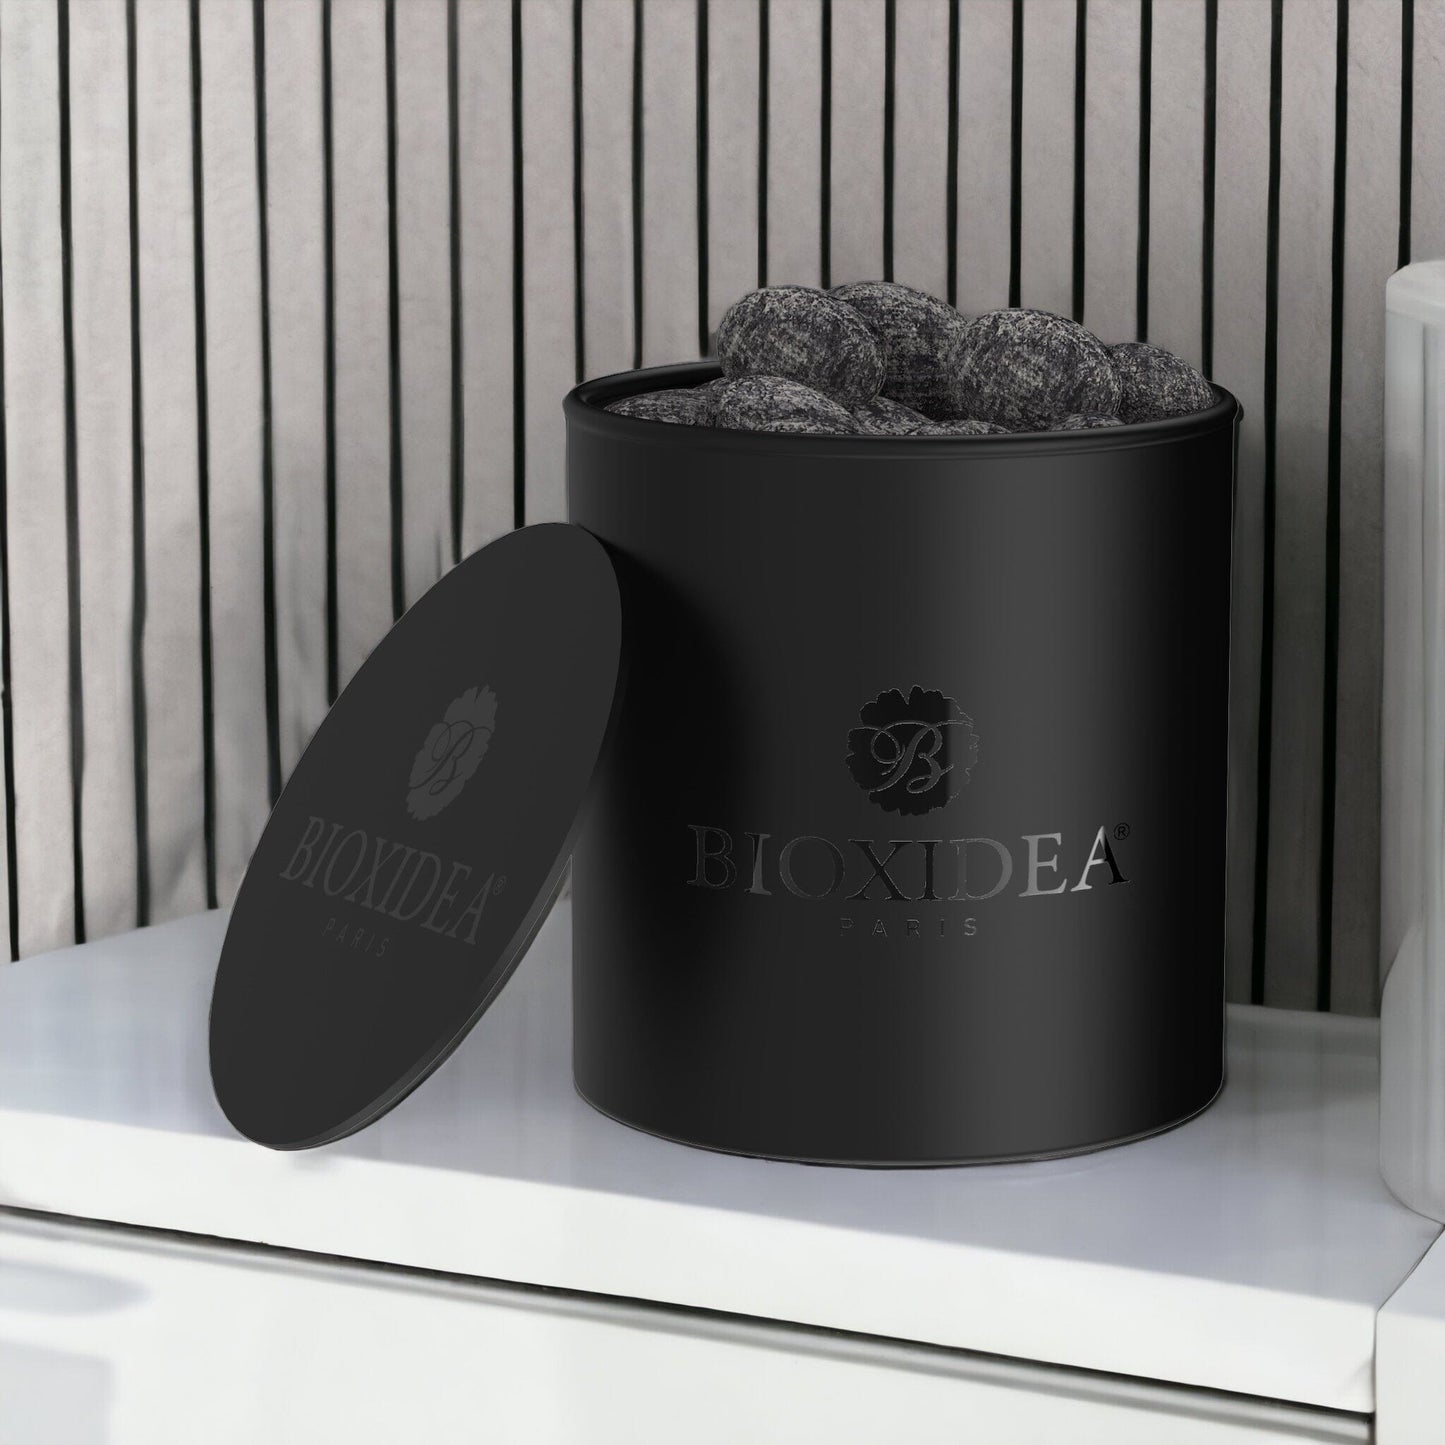 BIOXIDEA Pont des Arts™ Collection Privé Diffuser Set Home Fragrances